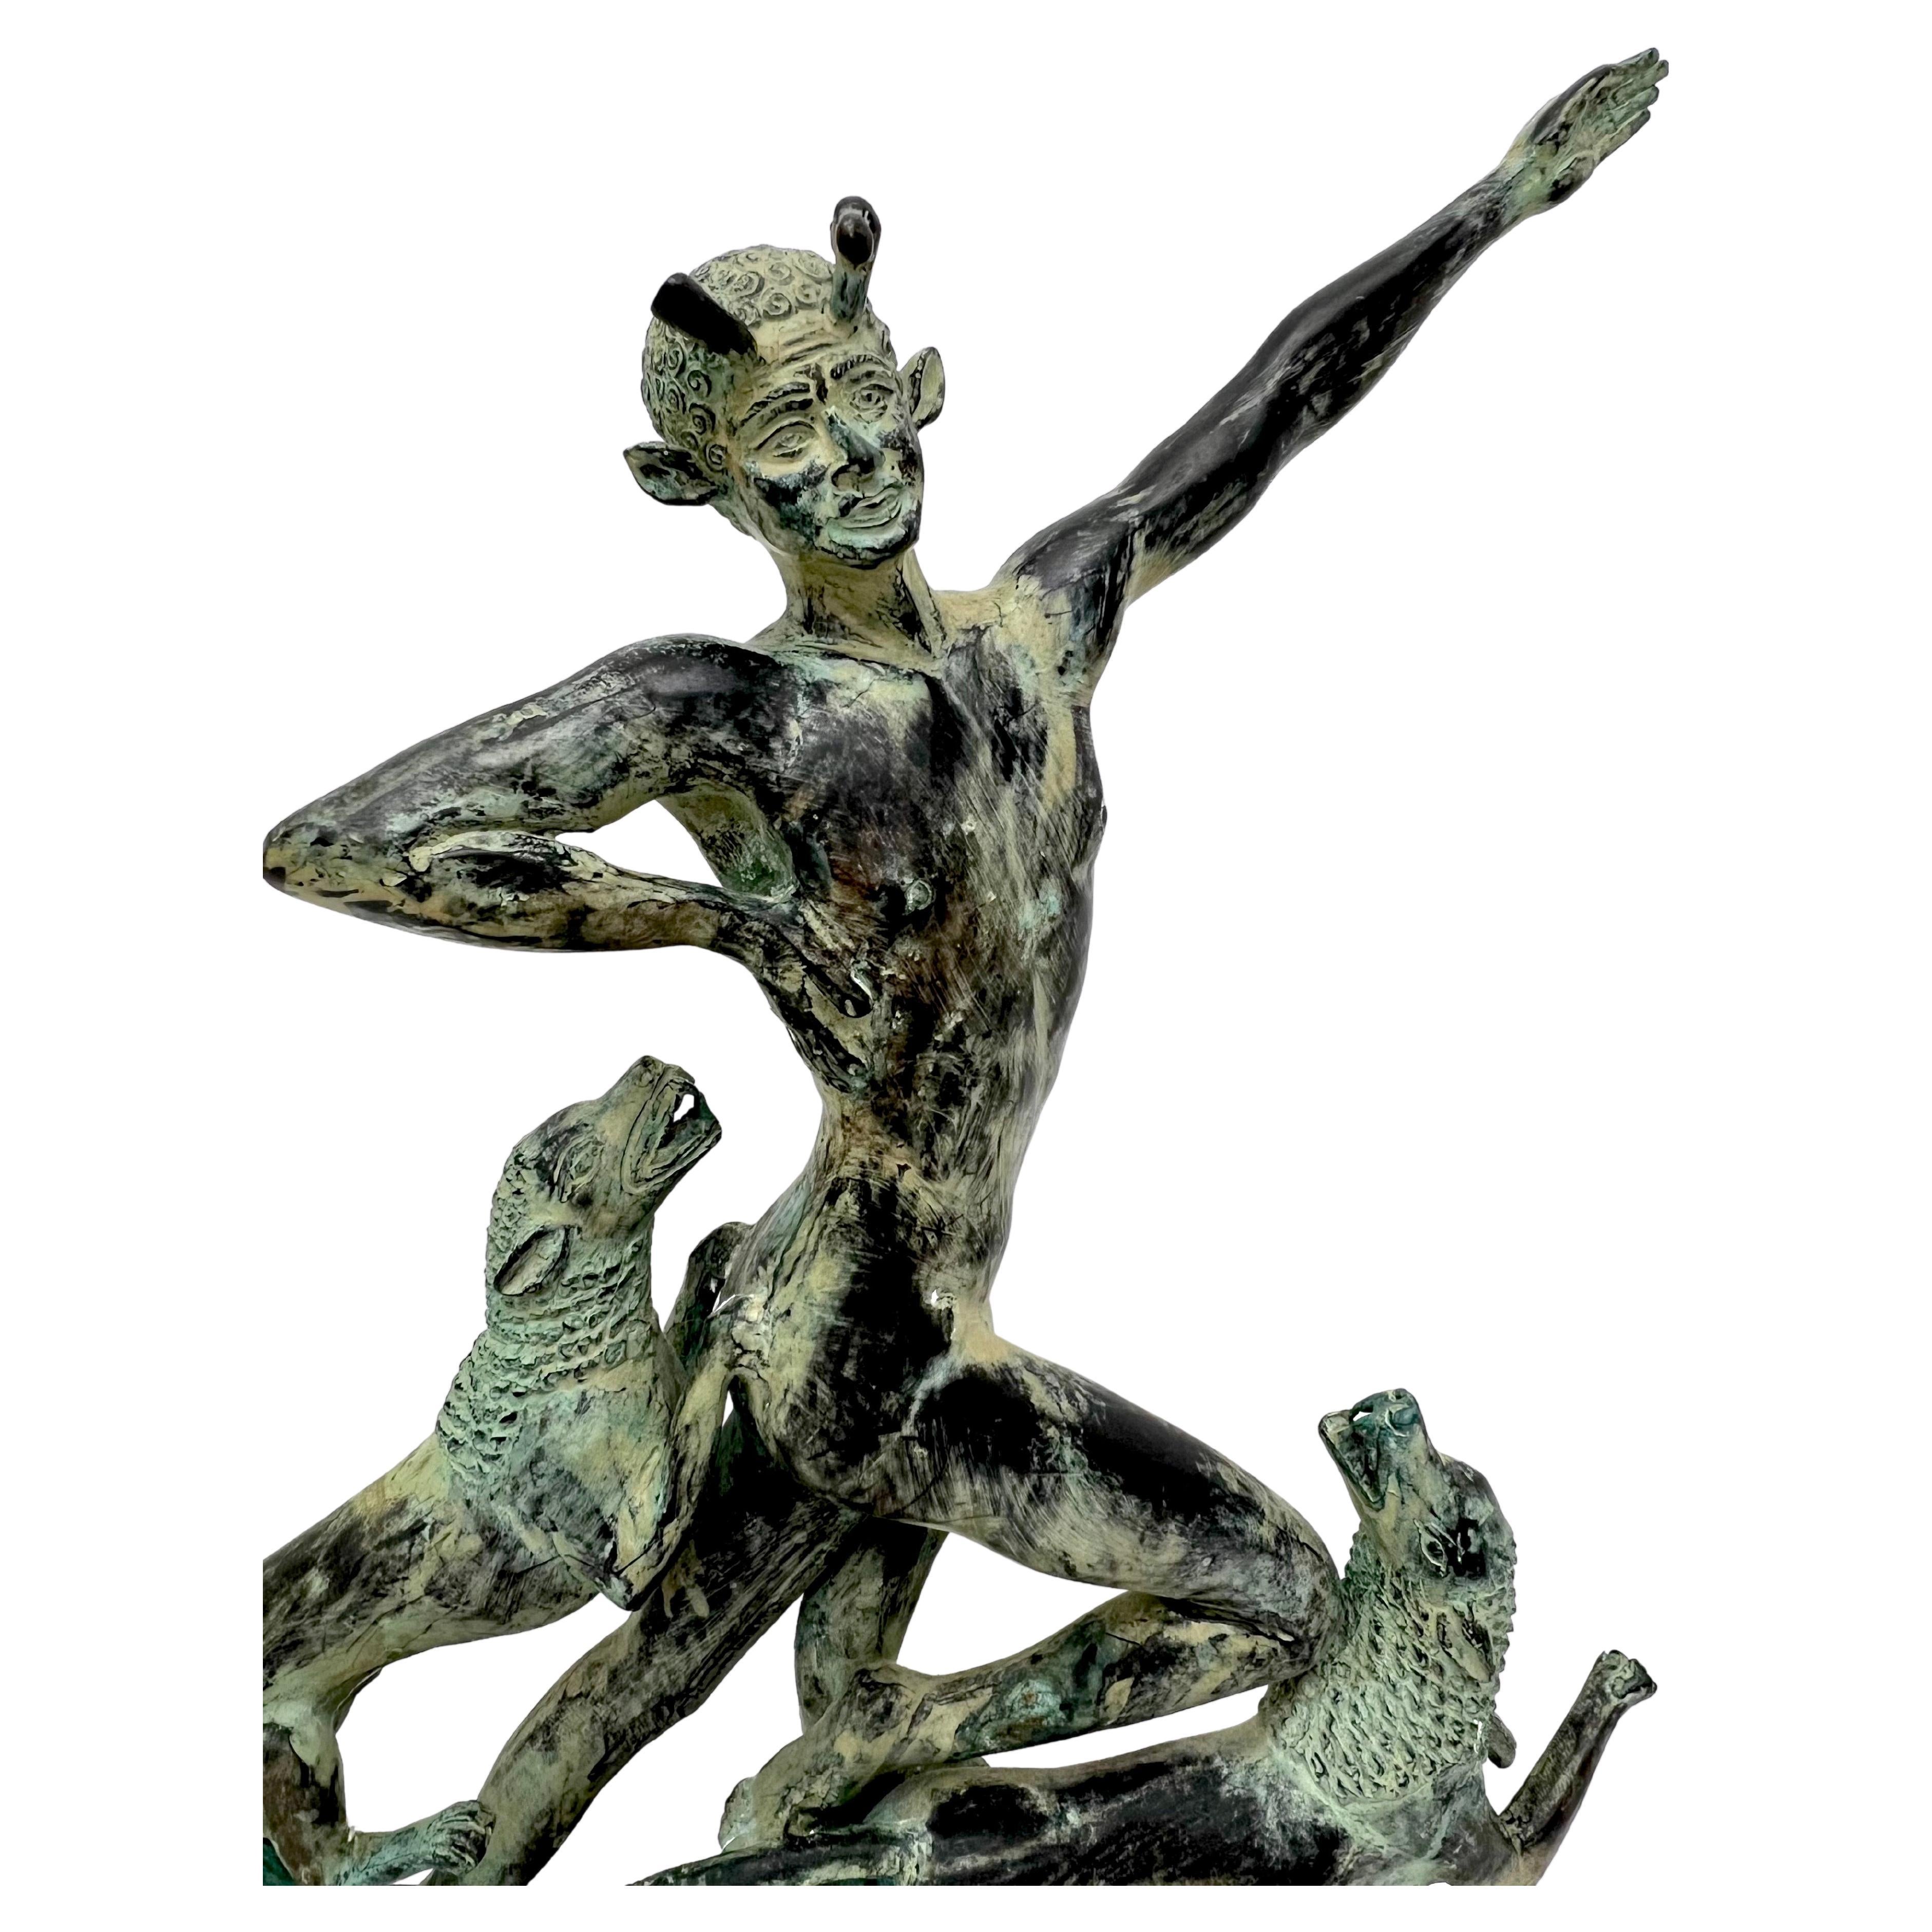 Fabuleuse sculpture Art Déco d'après Paul Manship (1885-1966) représentant Actéon et ses chiens lors de sa transformation d'homme en cerf.  
Manship était fasciné par la mythologie grecque et romaine. Une bourse du Prix de Rome en 1909 lui avait